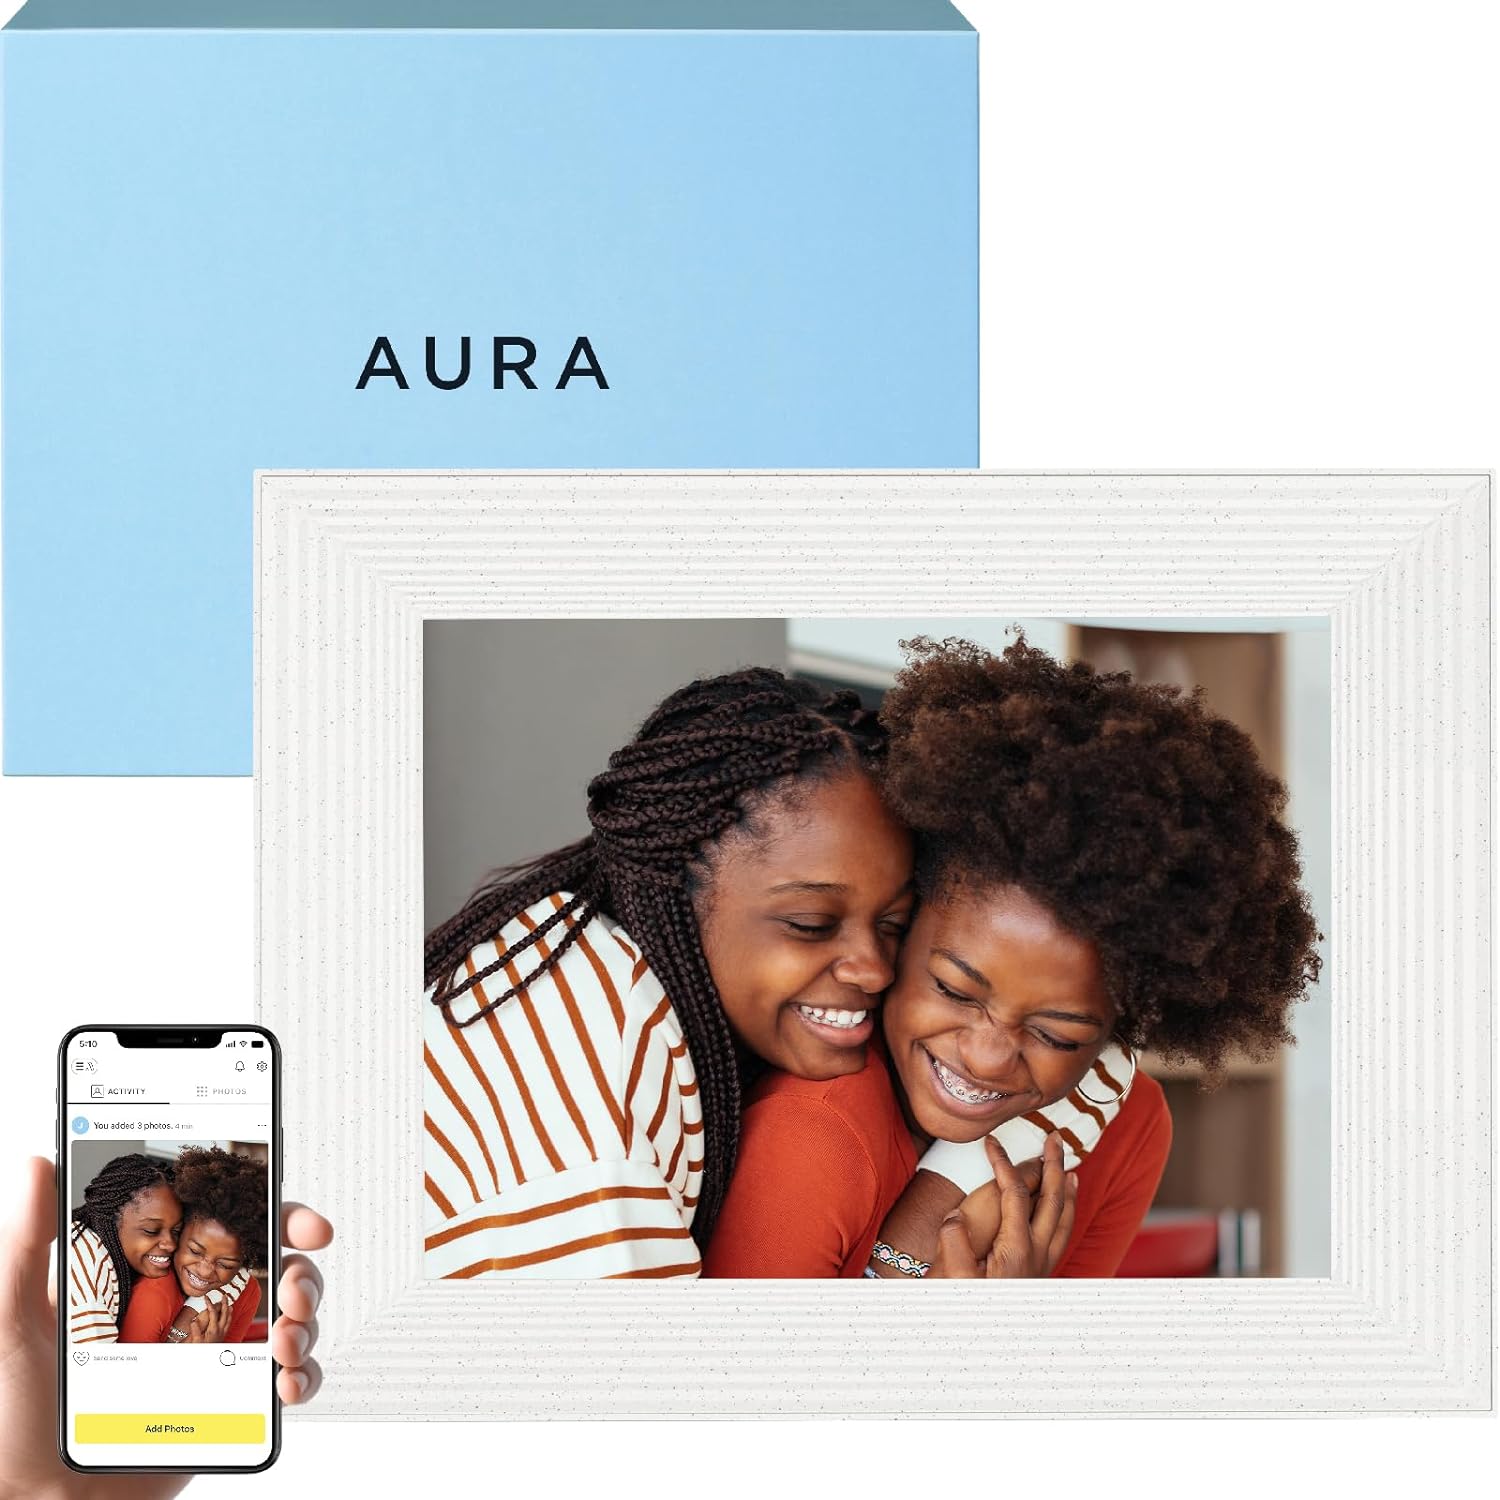 The Aura Mason digital photo frame